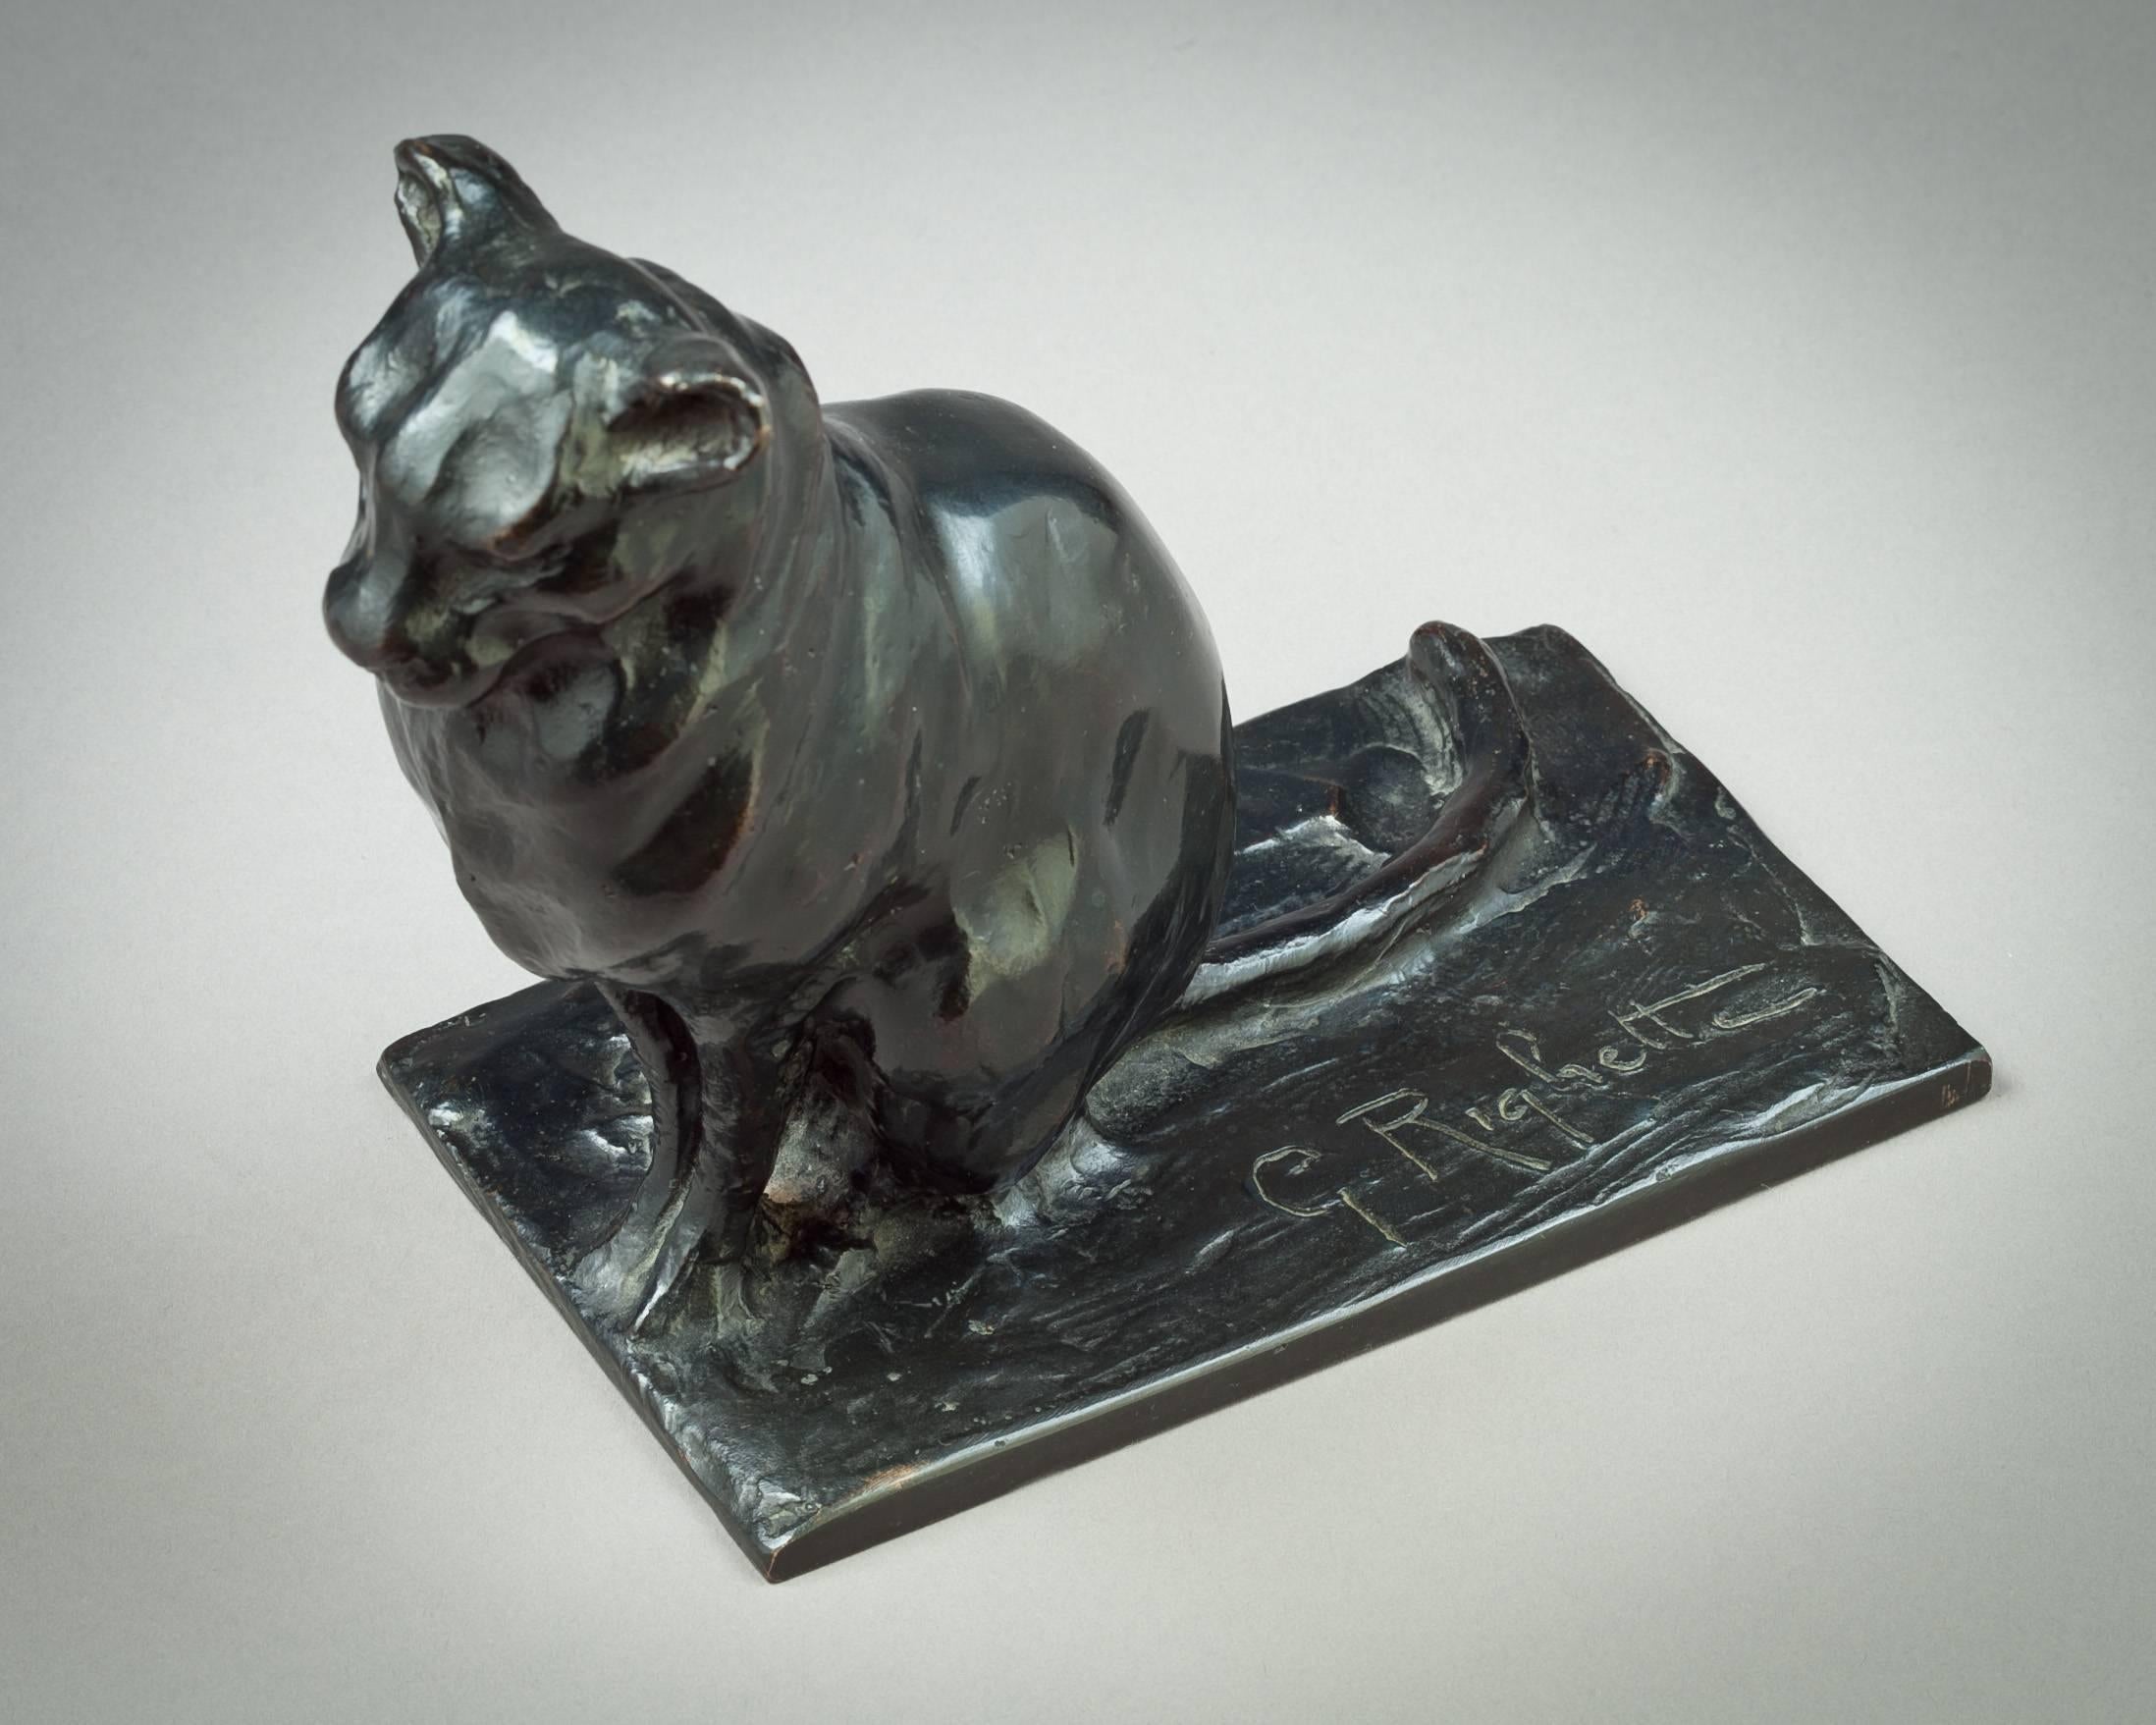 Sculpture de chat en bronze, Guido Righetti, vers 1925.

Gravé G. Righetti.